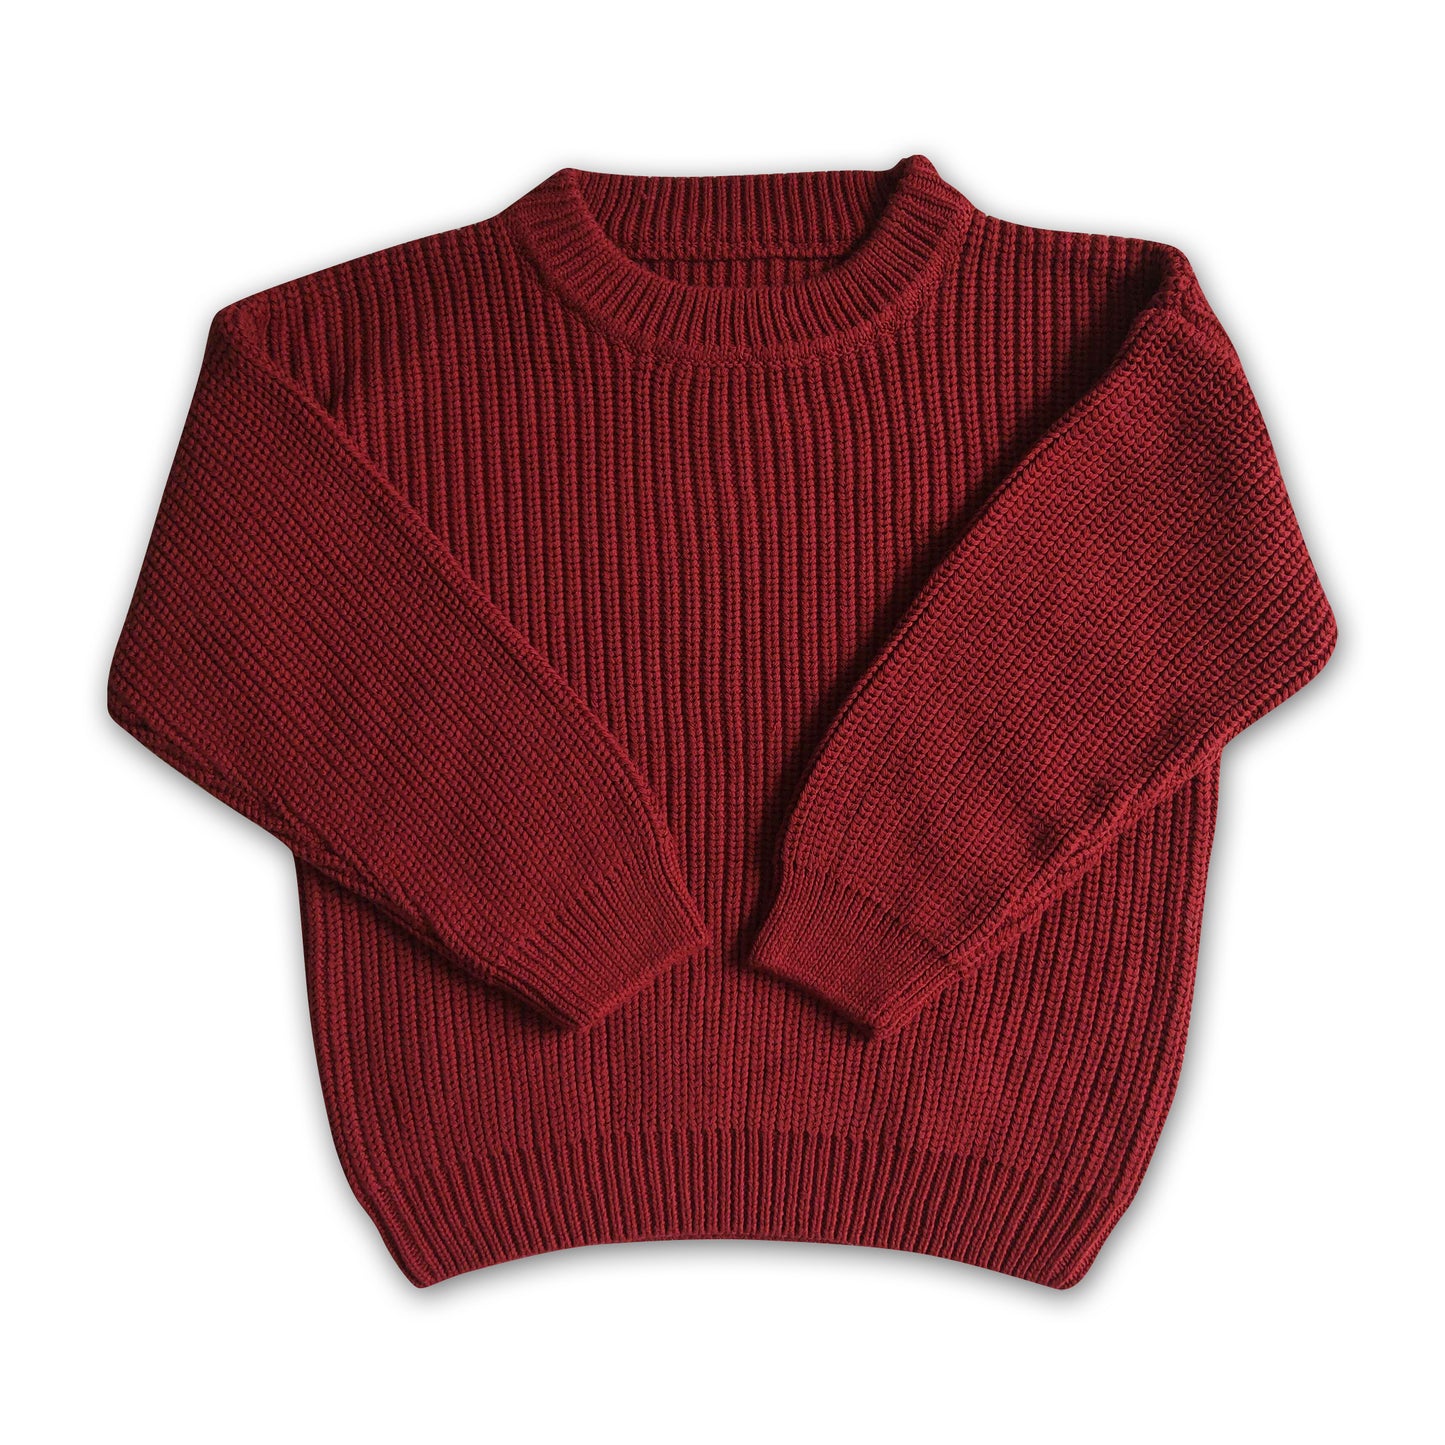 Maroon cotton winter sweater